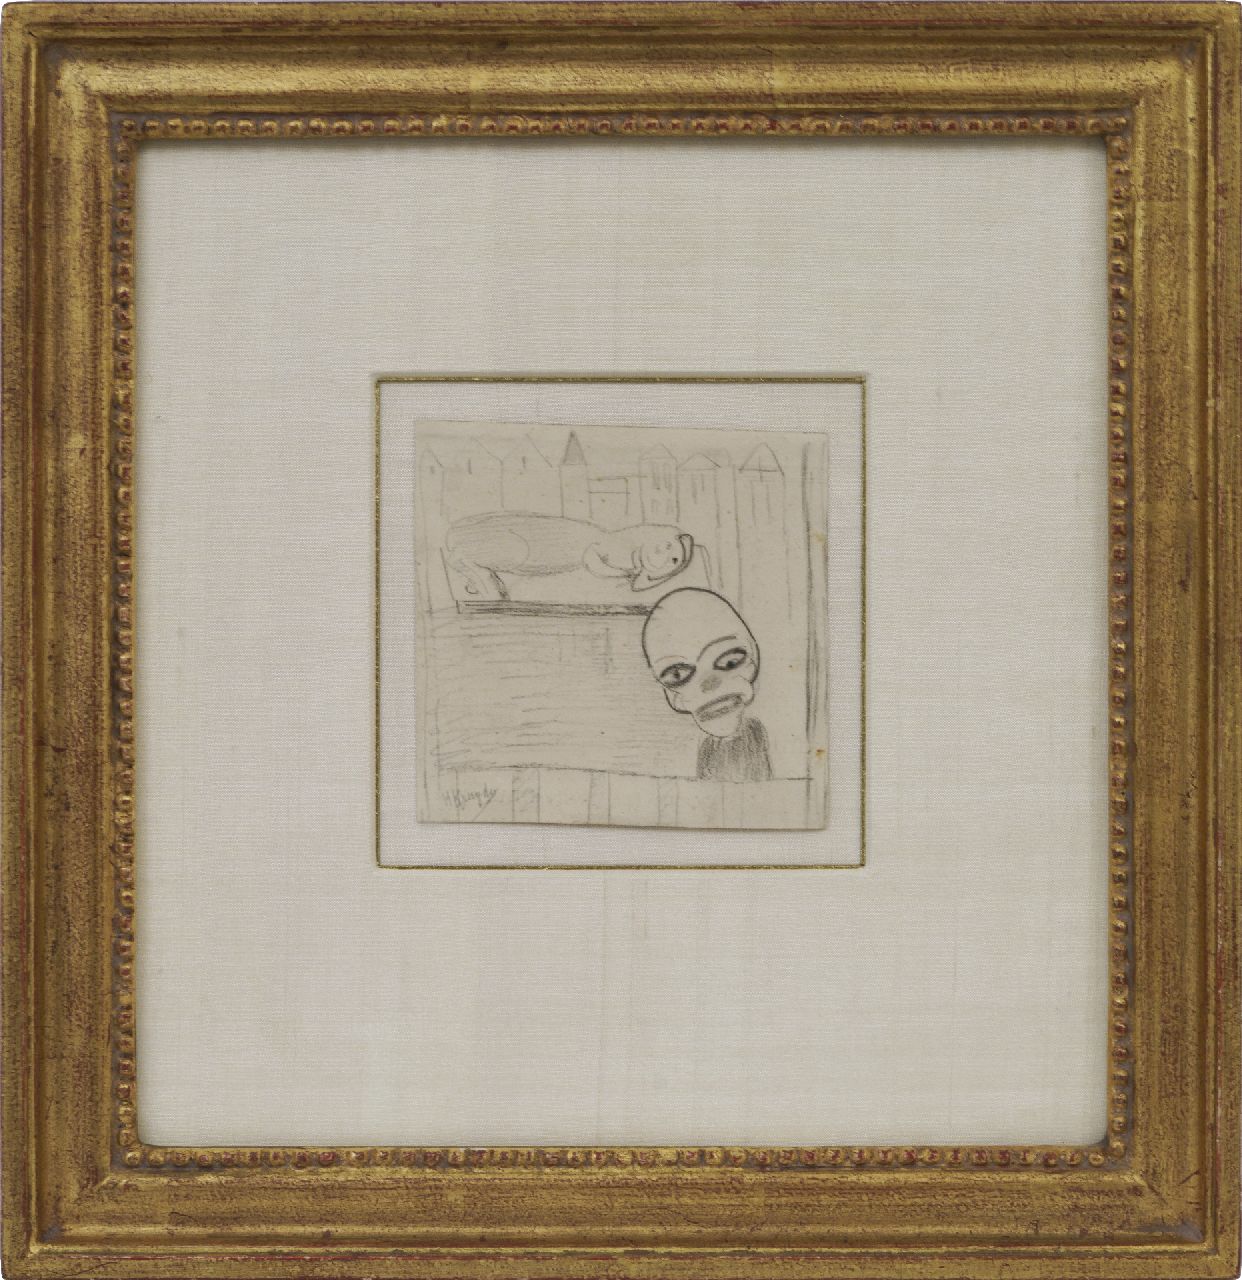 Kruyder H.J.  | 'Herman' Justus Kruyder | Aquarellen en tekeningen te koop aangeboden | Clown en dier, zwart krijt op papier 10,0 x 10,2 cm, gesigneerd linksonder